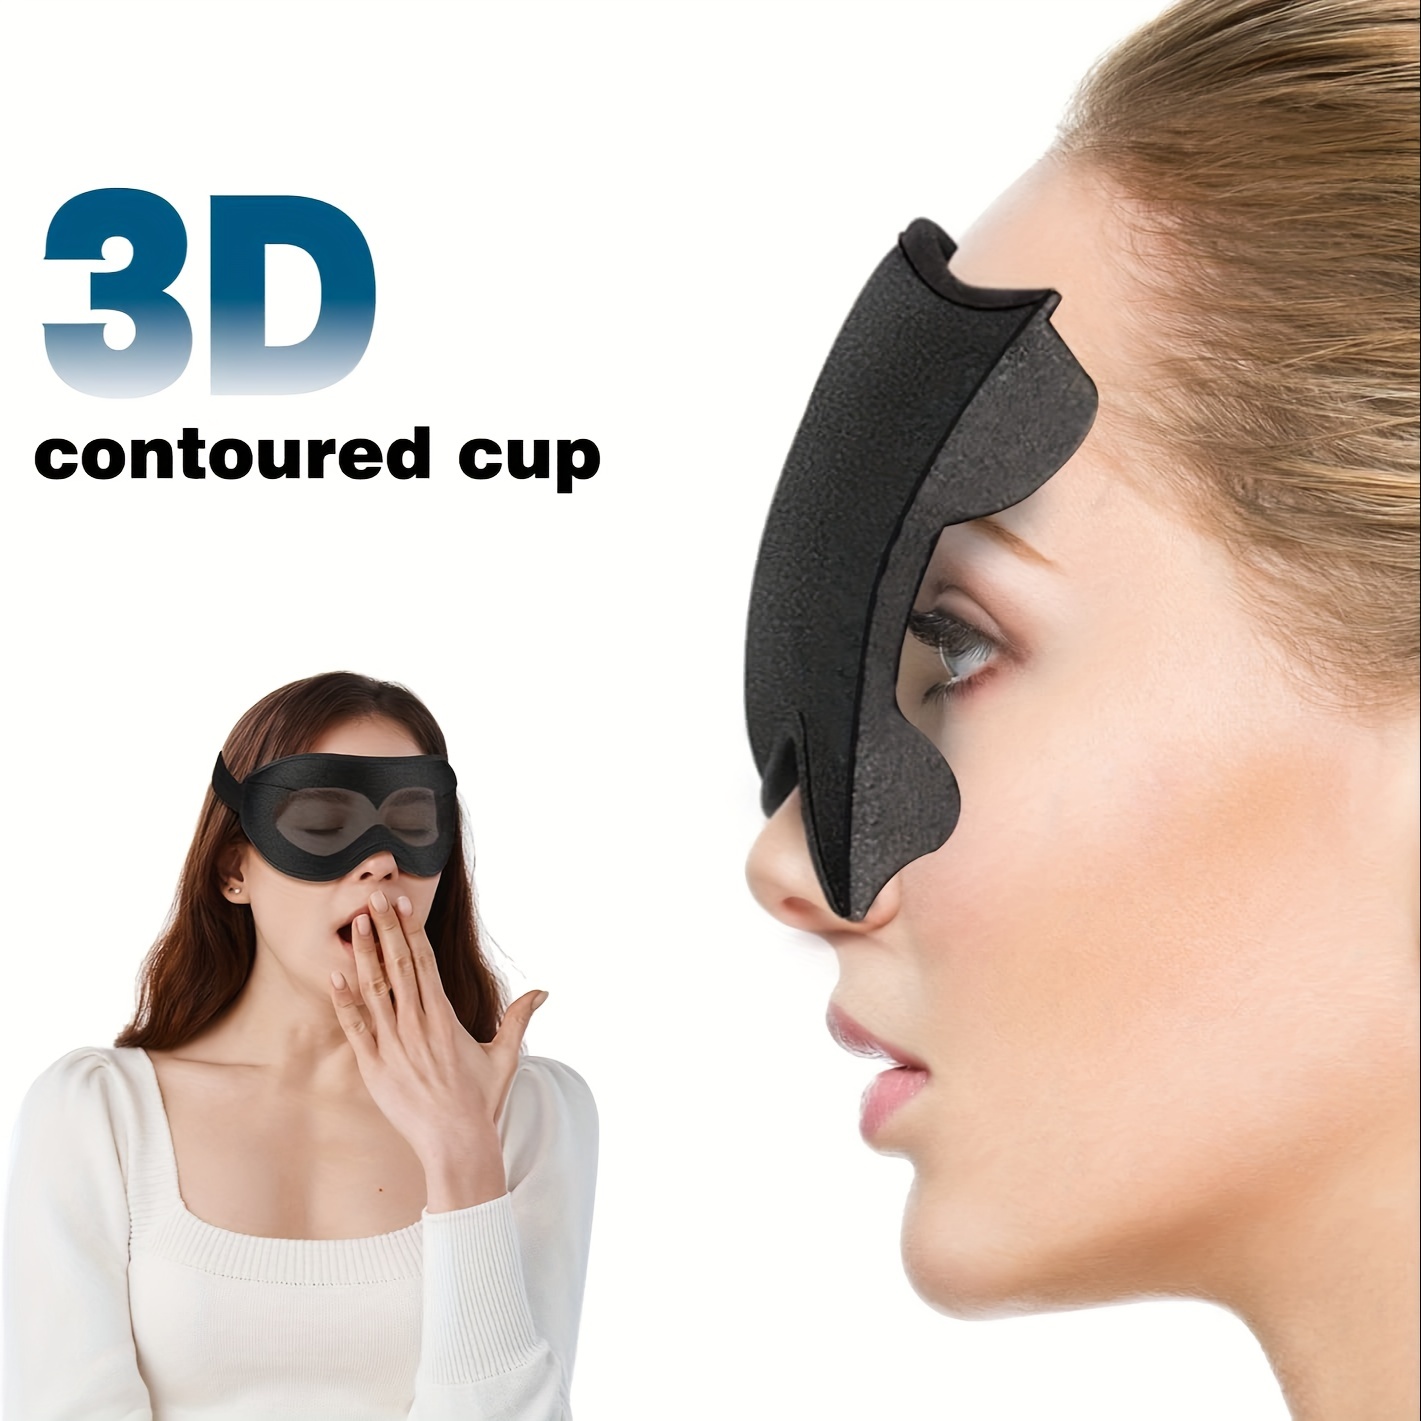 Máscara para dormir, antifaz para dormir, antifaz para dormir para mujeres  y hombres, copa contorneada 3D, sin presión ocular, 99% de bloqueo de luz